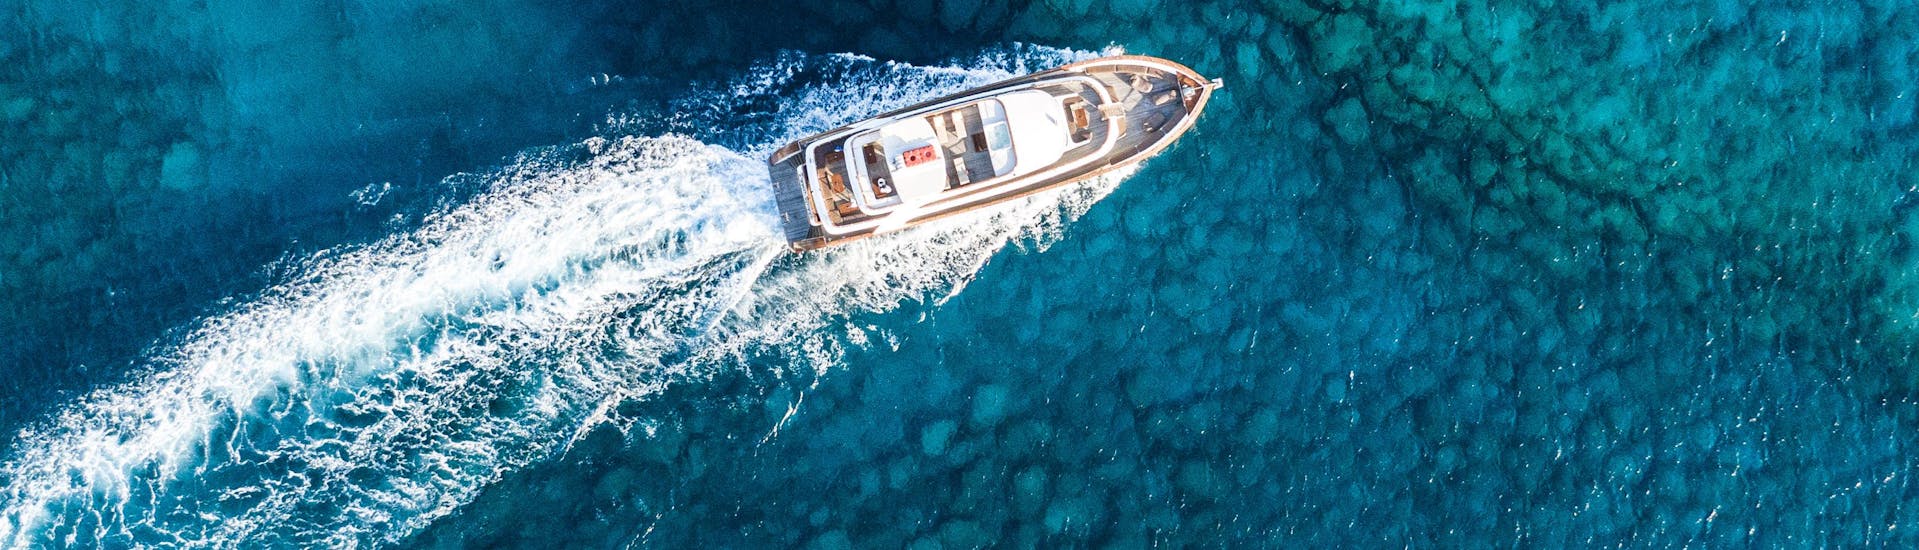 Foto des luxuriösen Bootes, das bei den Bootstouren von Ocean Queen Ayia Napa verwendet wird, fährt auf dem Wasser.